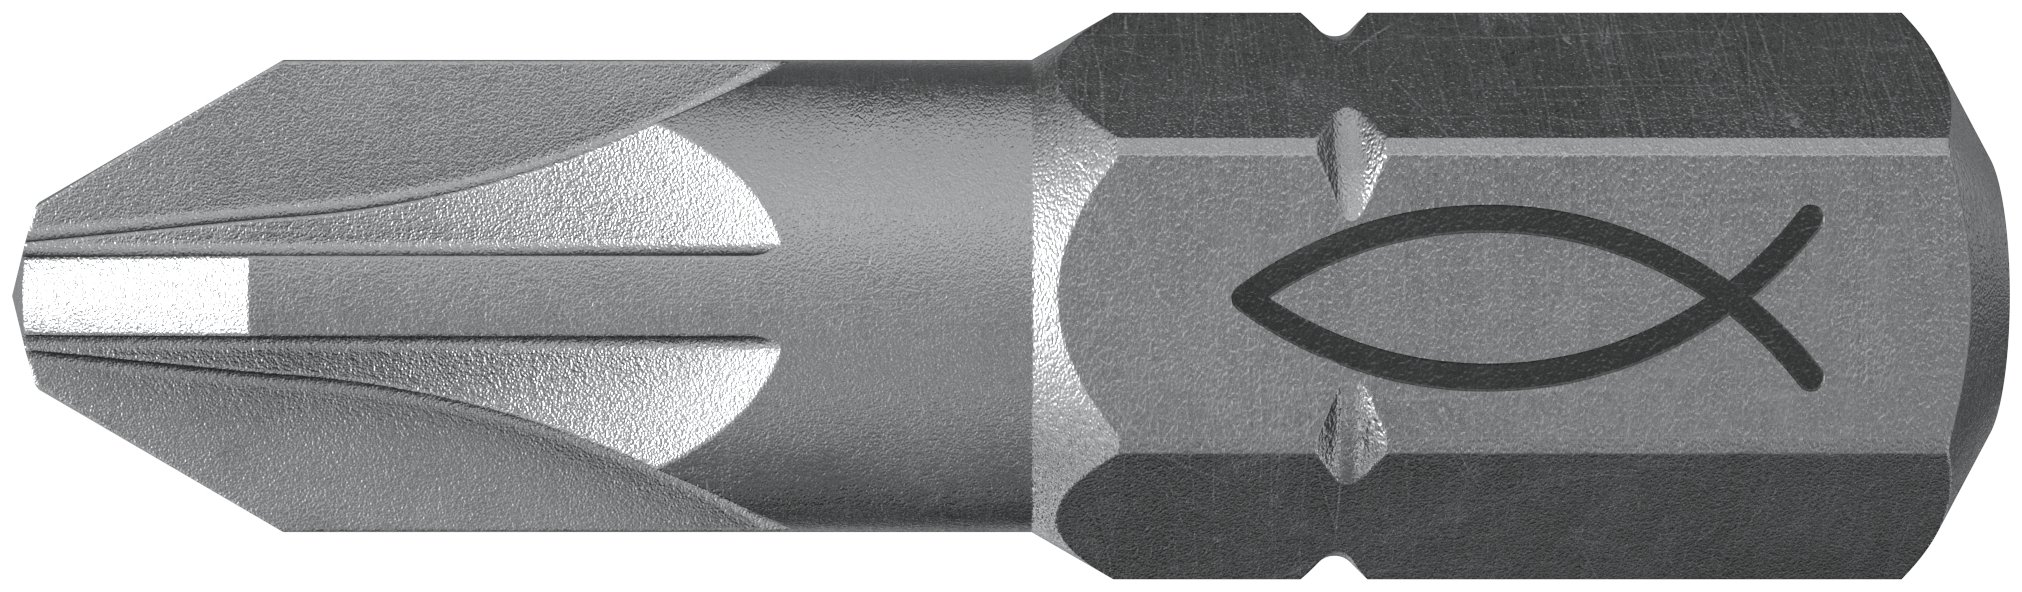 fischer Inserto per avvitatore FPB PZ 2 PROFI Bit W 10 (10 Pz.) L'inserto per trapano e avvitatore, in acciaio di alta qualit con elevata resistenza all?abrasione per uso professionale.